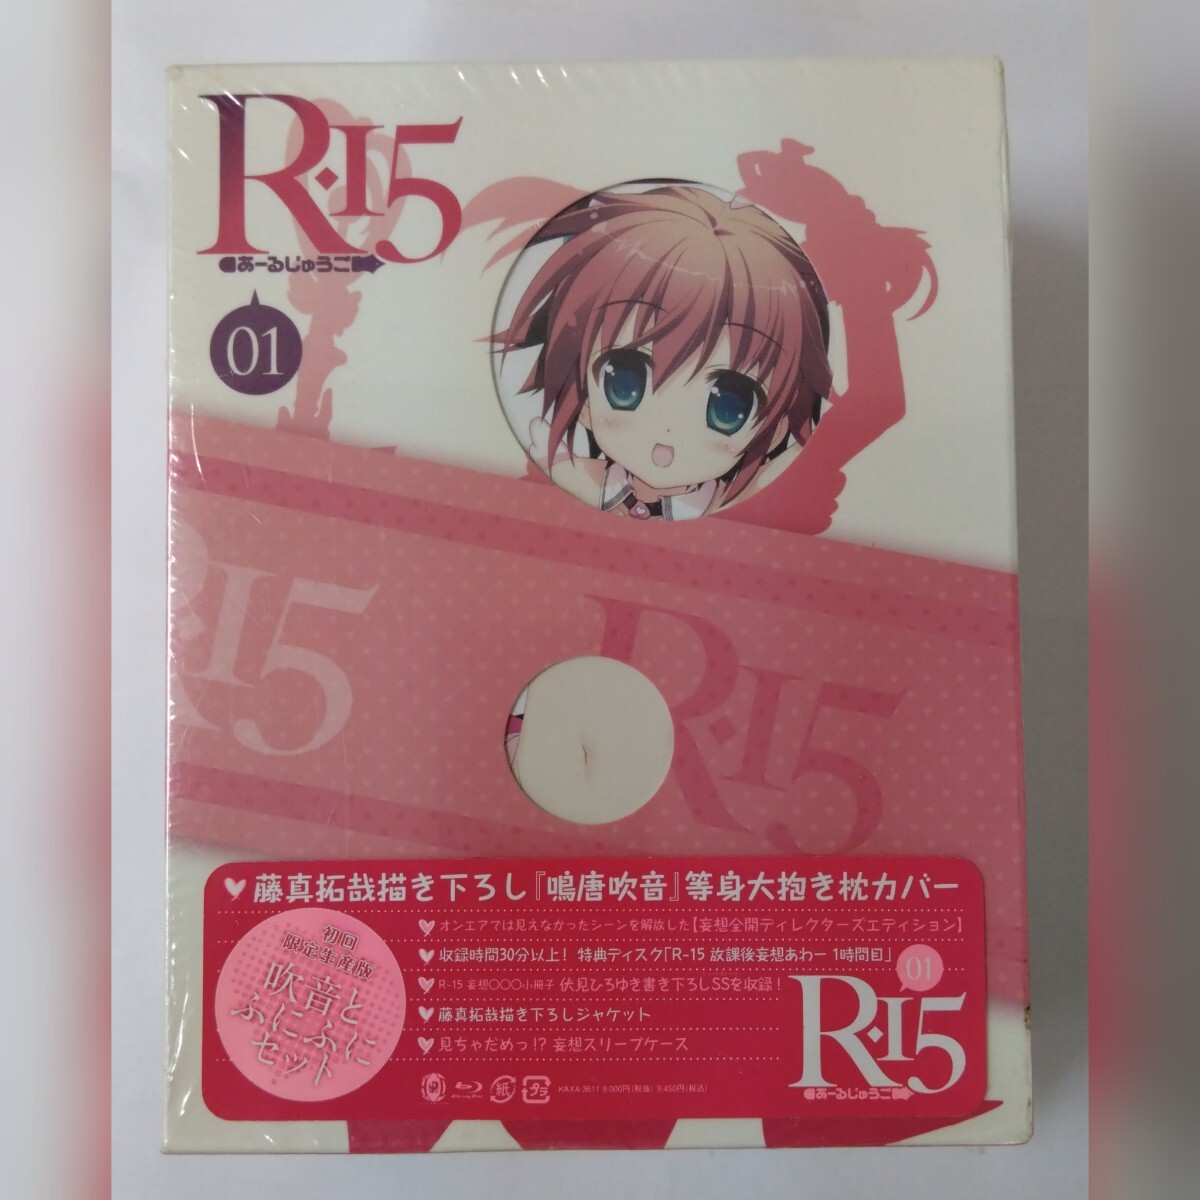 新品未開封品 R-15 第1巻 初回限定生産版 Blu-ray 吹音とふにふにセット_画像1